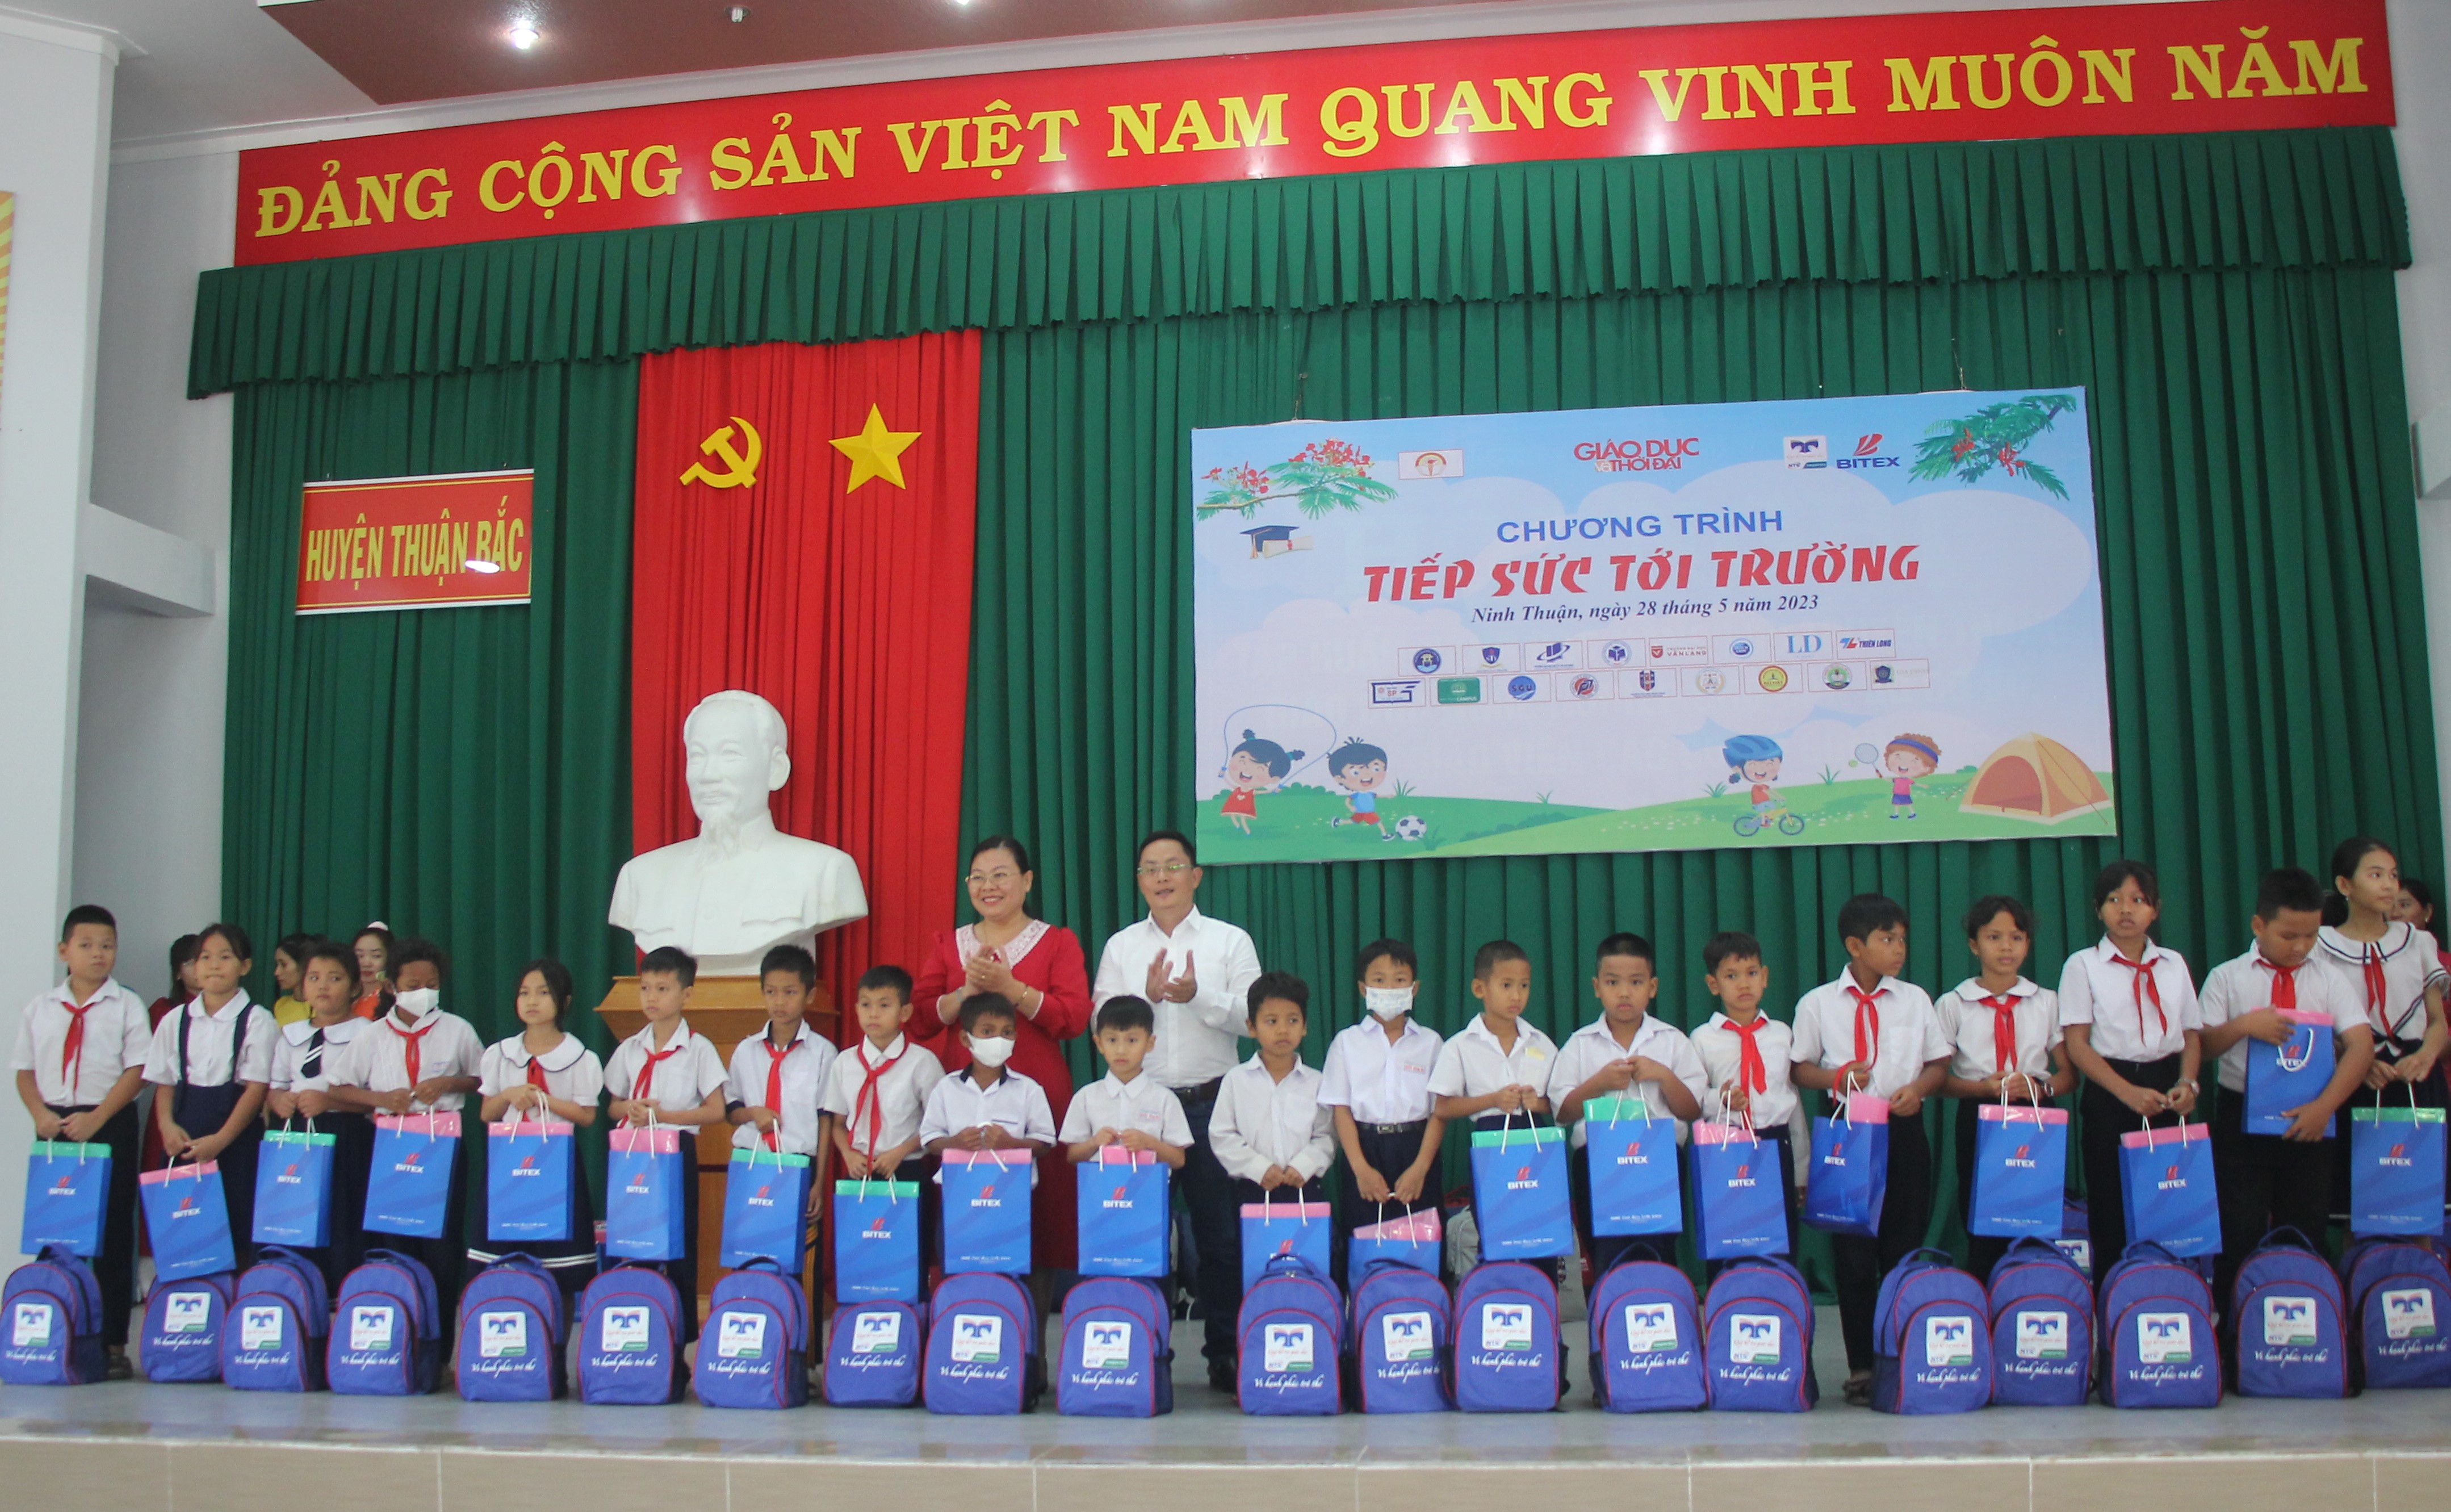 Báo Giáo dục và Thời đại 'tiếp sức tới trường' tại Ninh Thuận ảnh 10